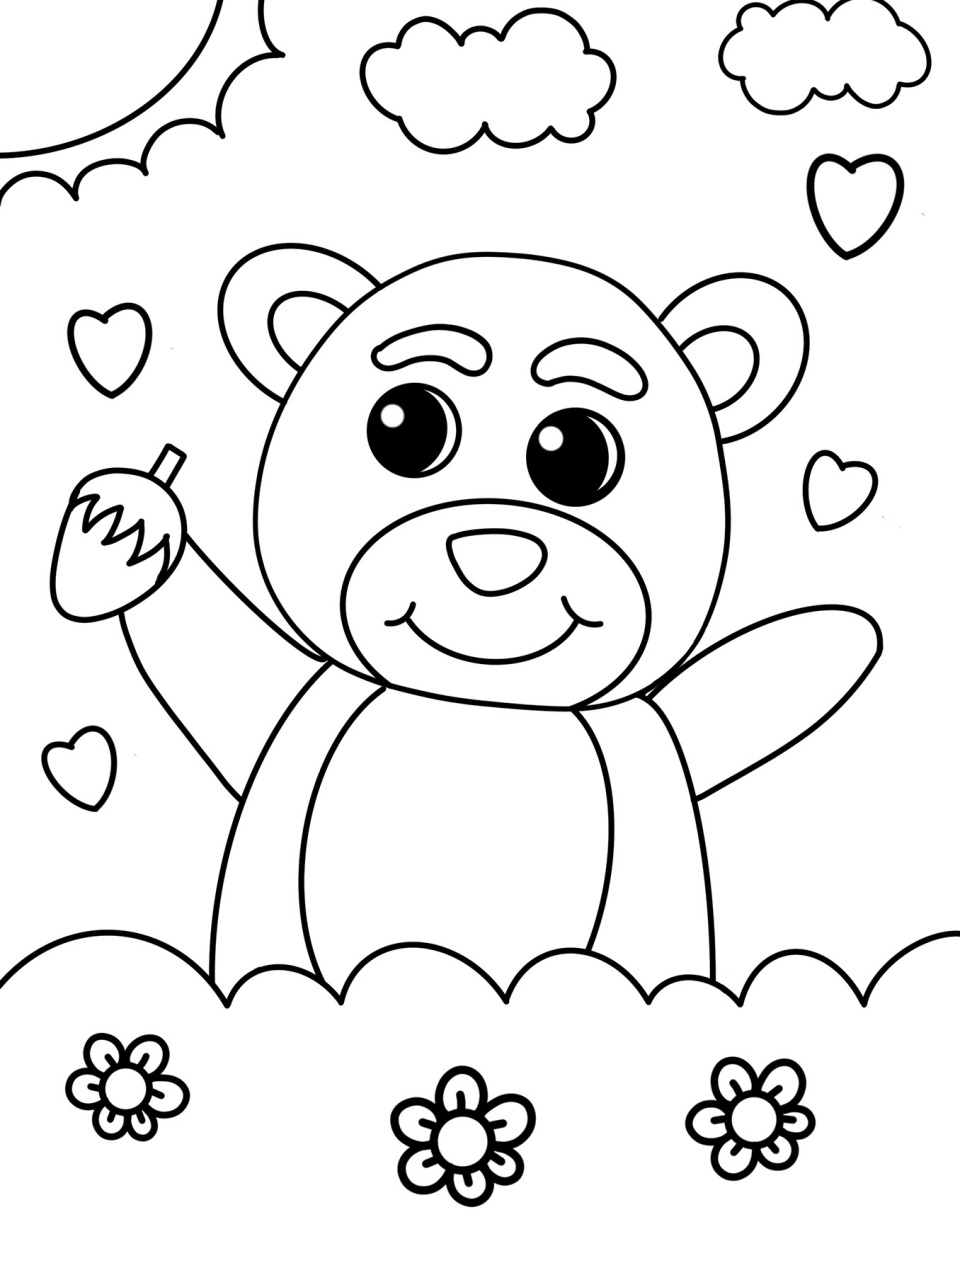 草莓熊 儿童画 简笔画 创意画 带线稿哦 